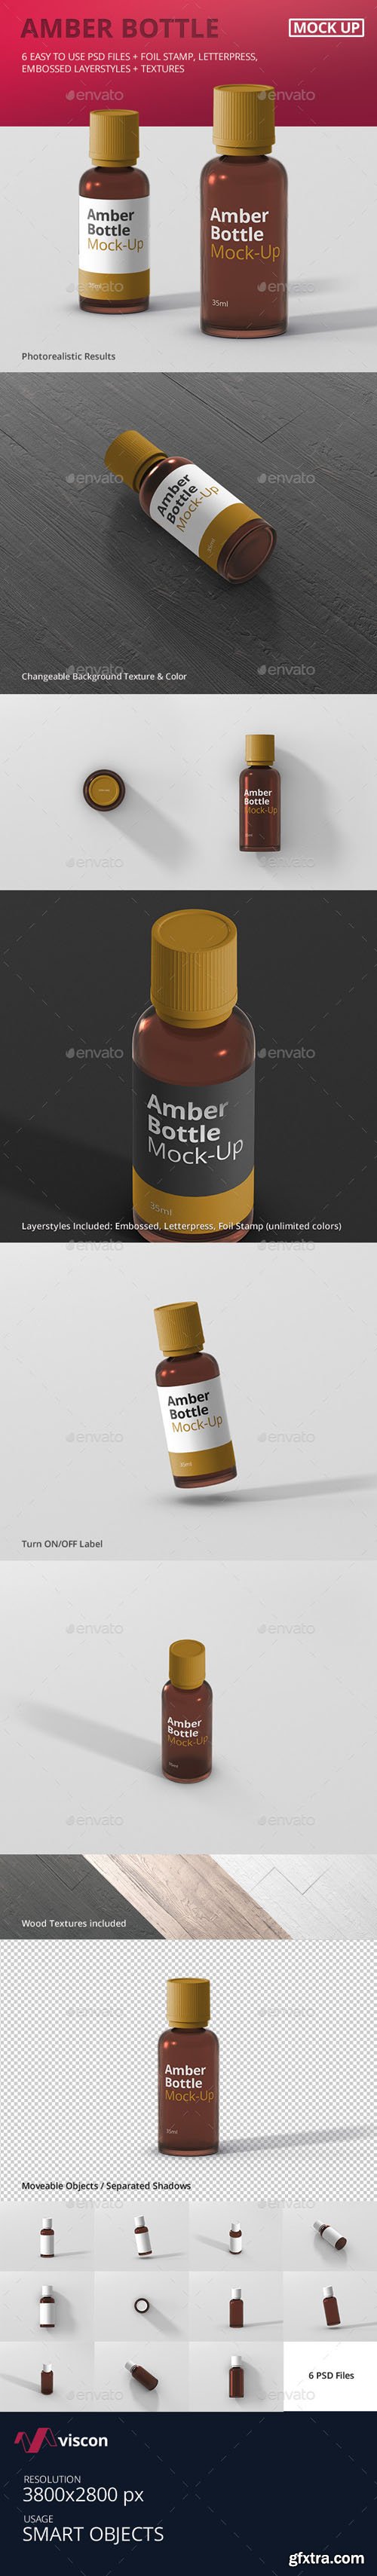 GR - Amber Bottle Mockup 19285740